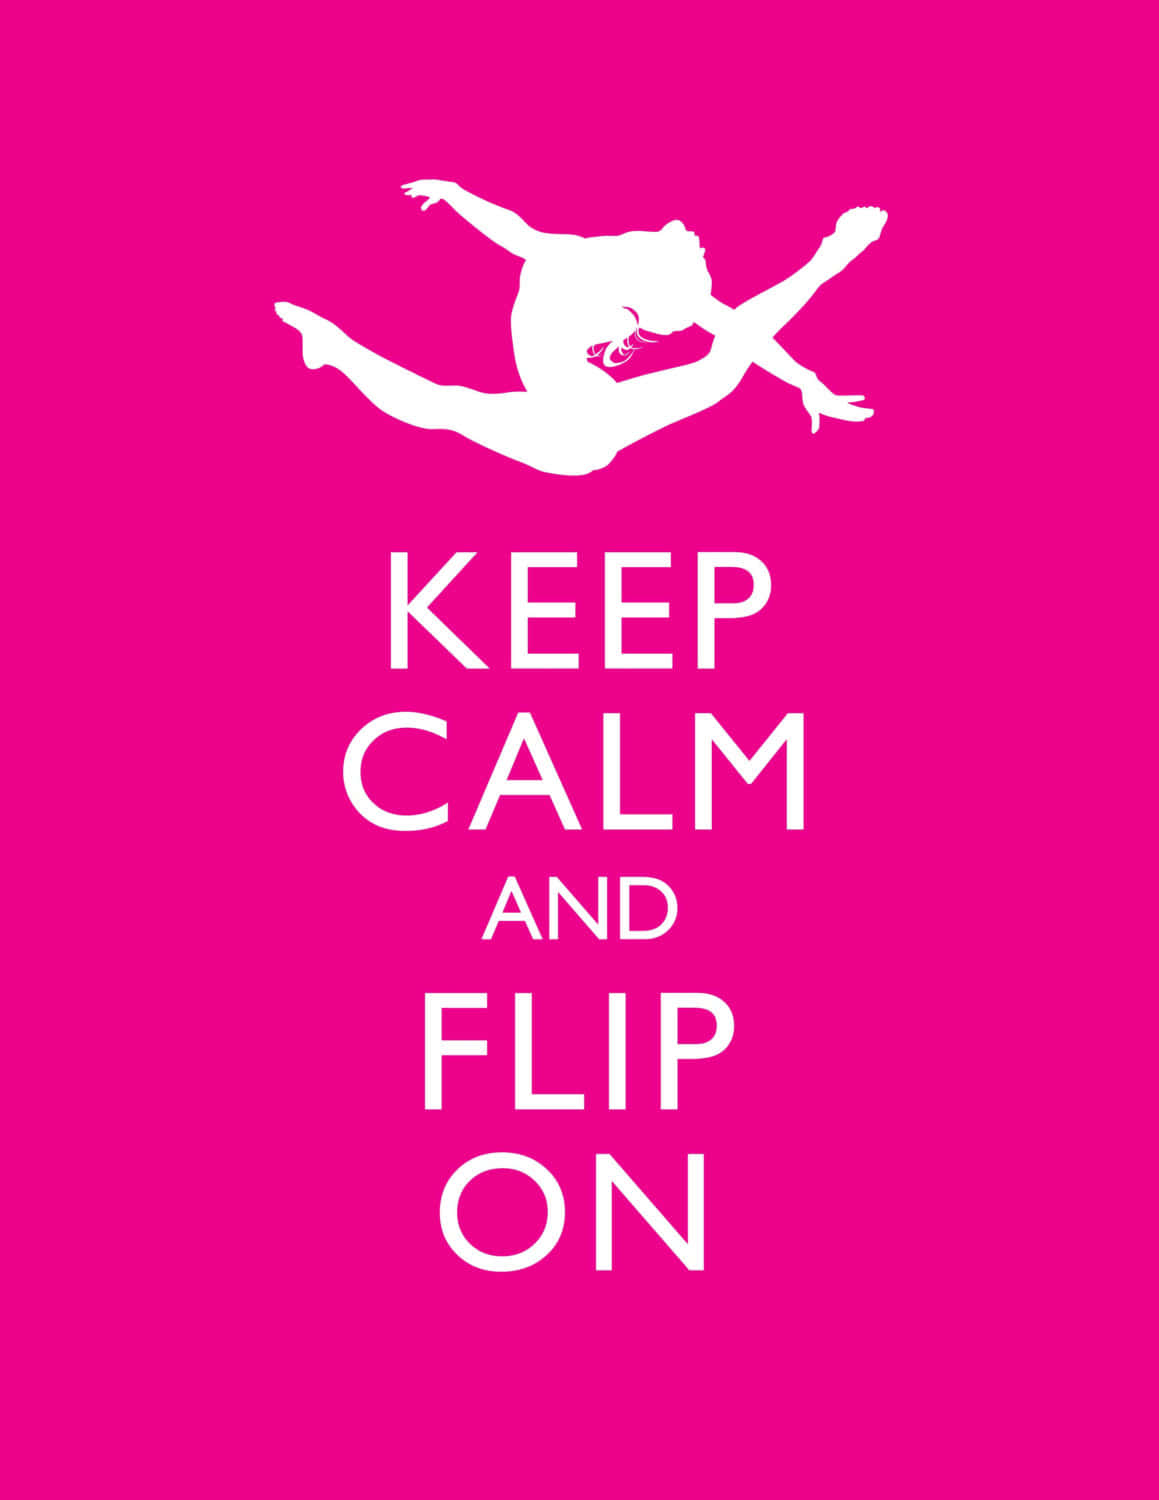 keep calm and do gymnastics